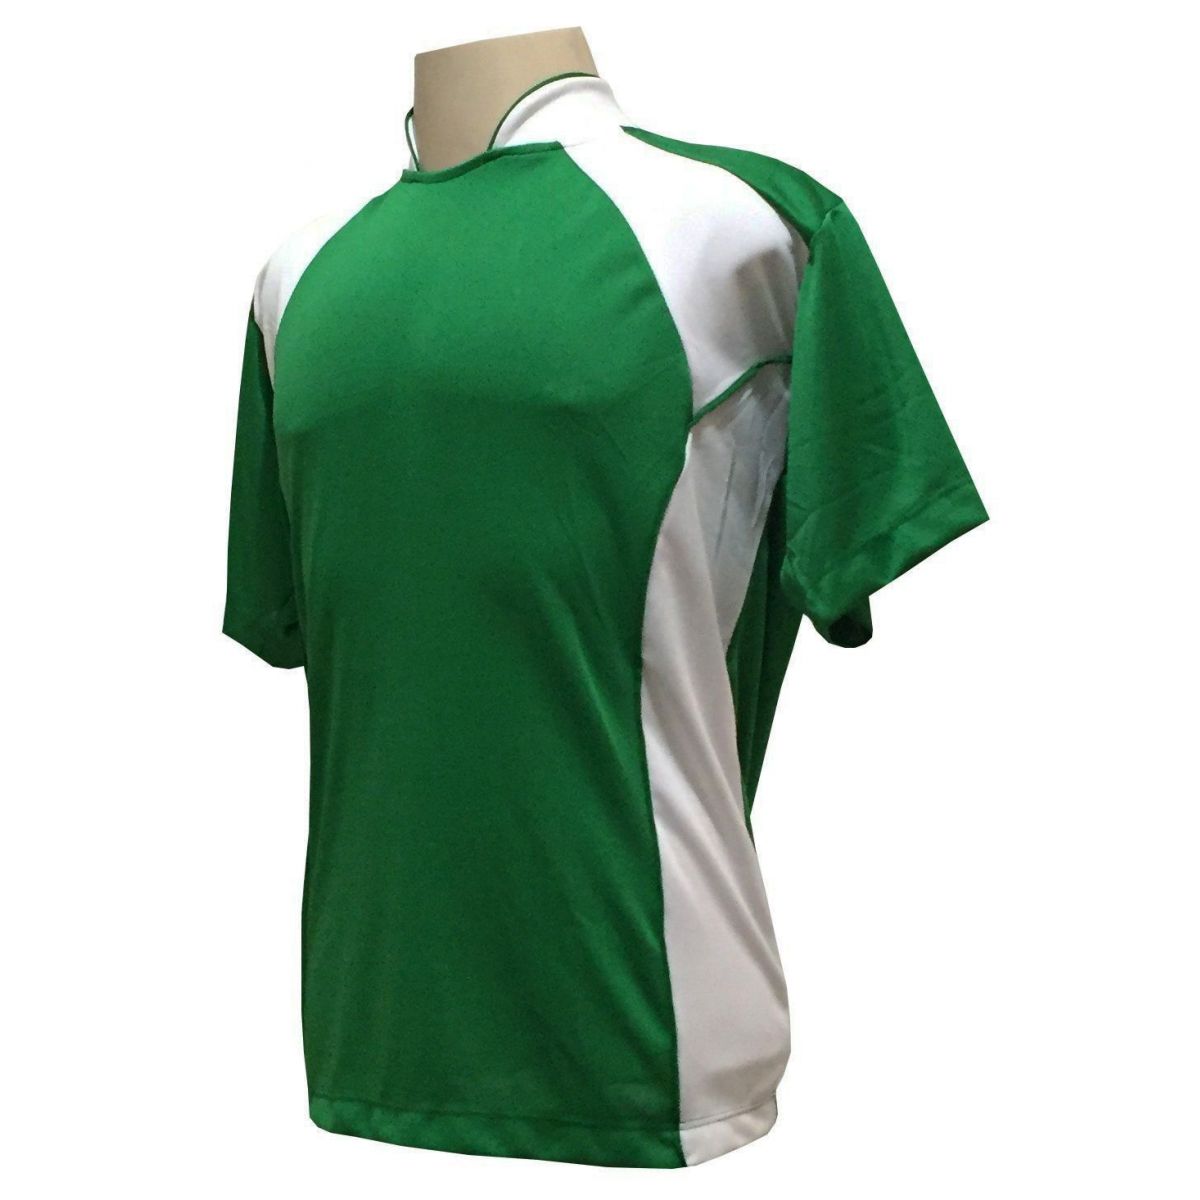 Uniforme Esportivo com 14 camisas modelo Suécia Verde/Branco + 14 calções modelo Copa + 1 Goleiro + Brindes